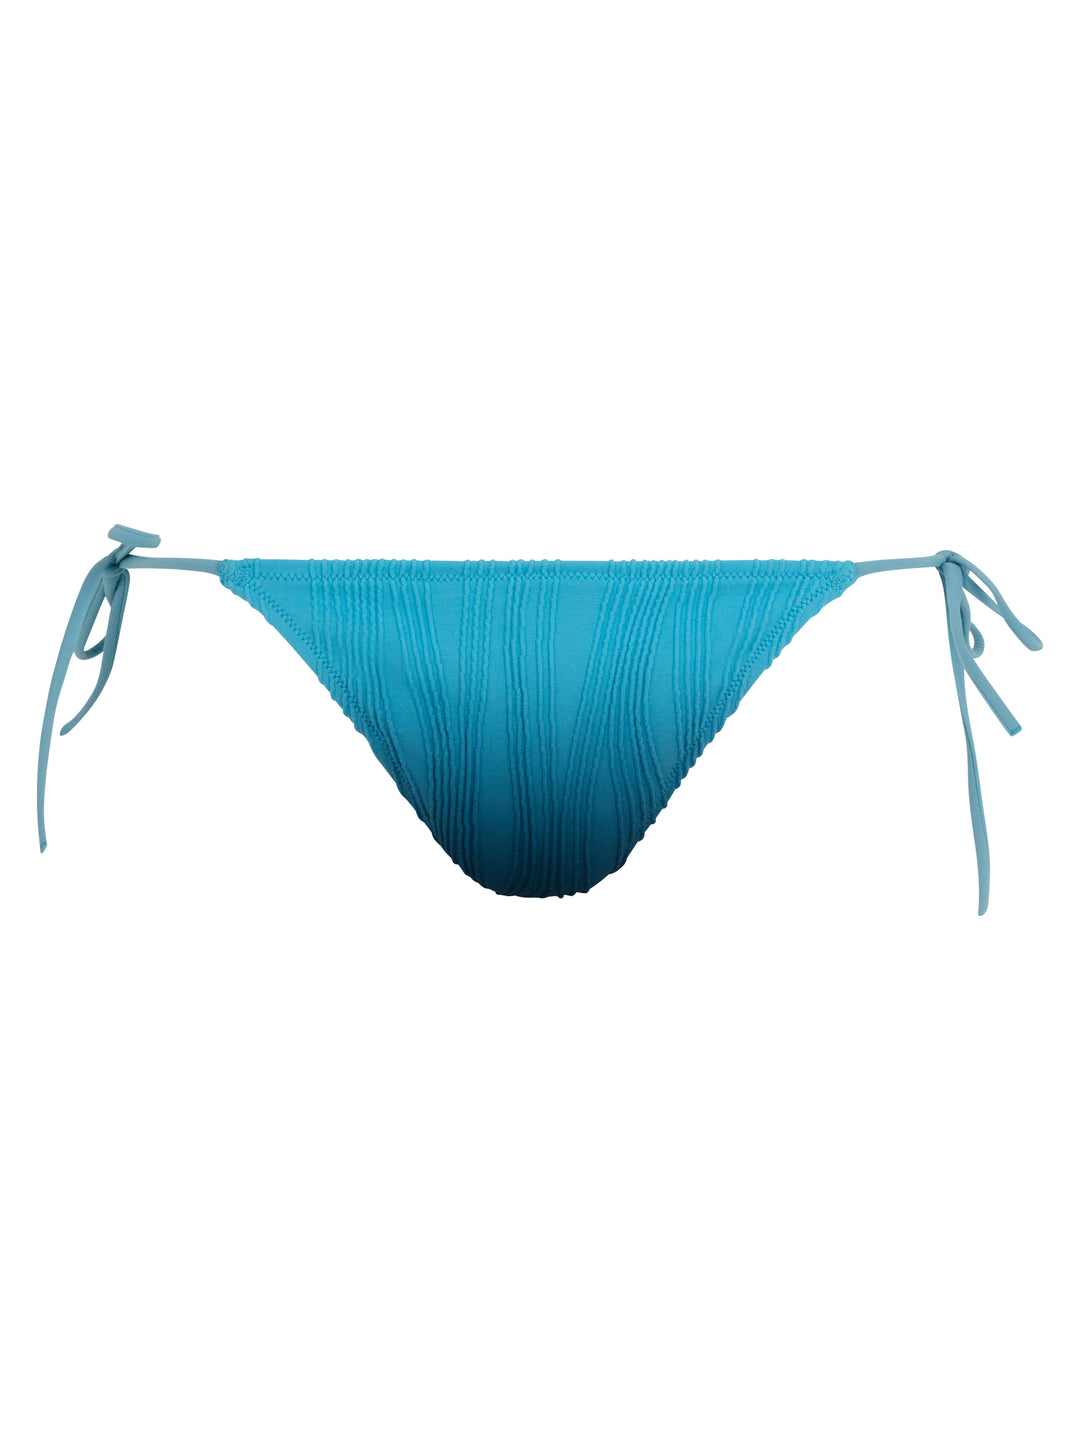 Chantelle Trajes de baño - Bikini de natación talla única Azul tie & tinte